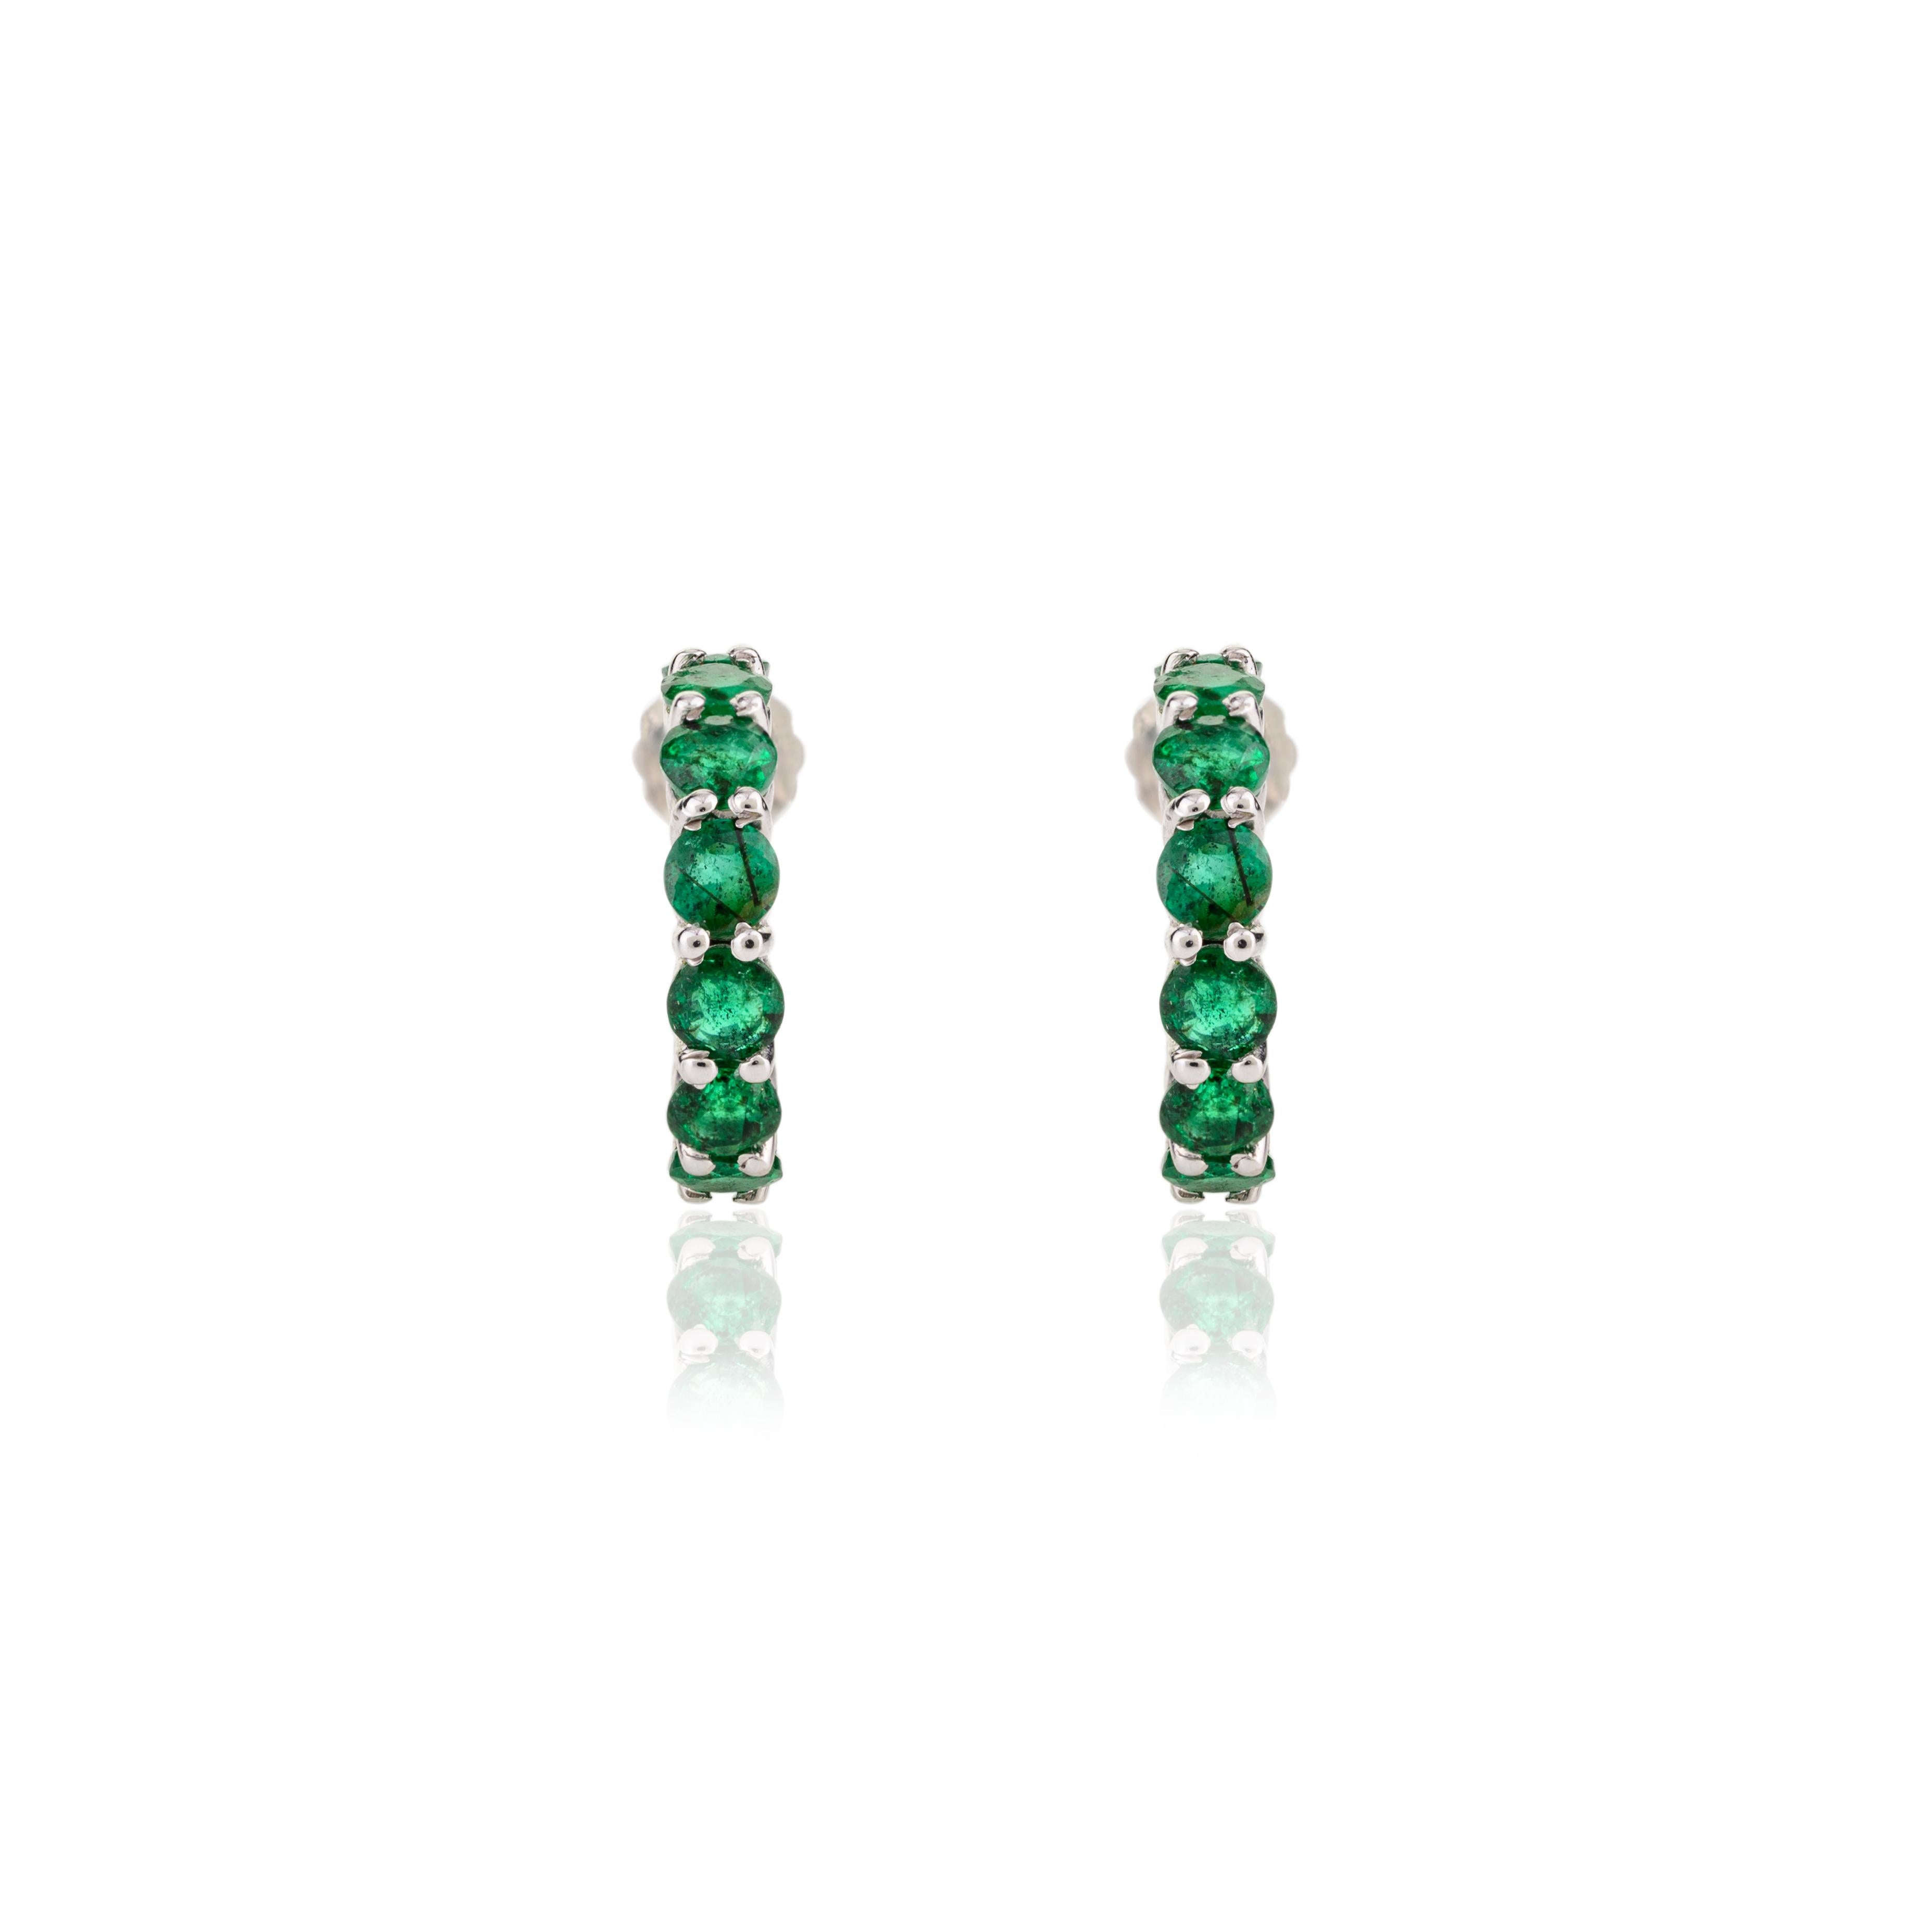 Women's 18k White Gold Bright Emerald Birthstone Tiny Hoop Earrings Gift for Her